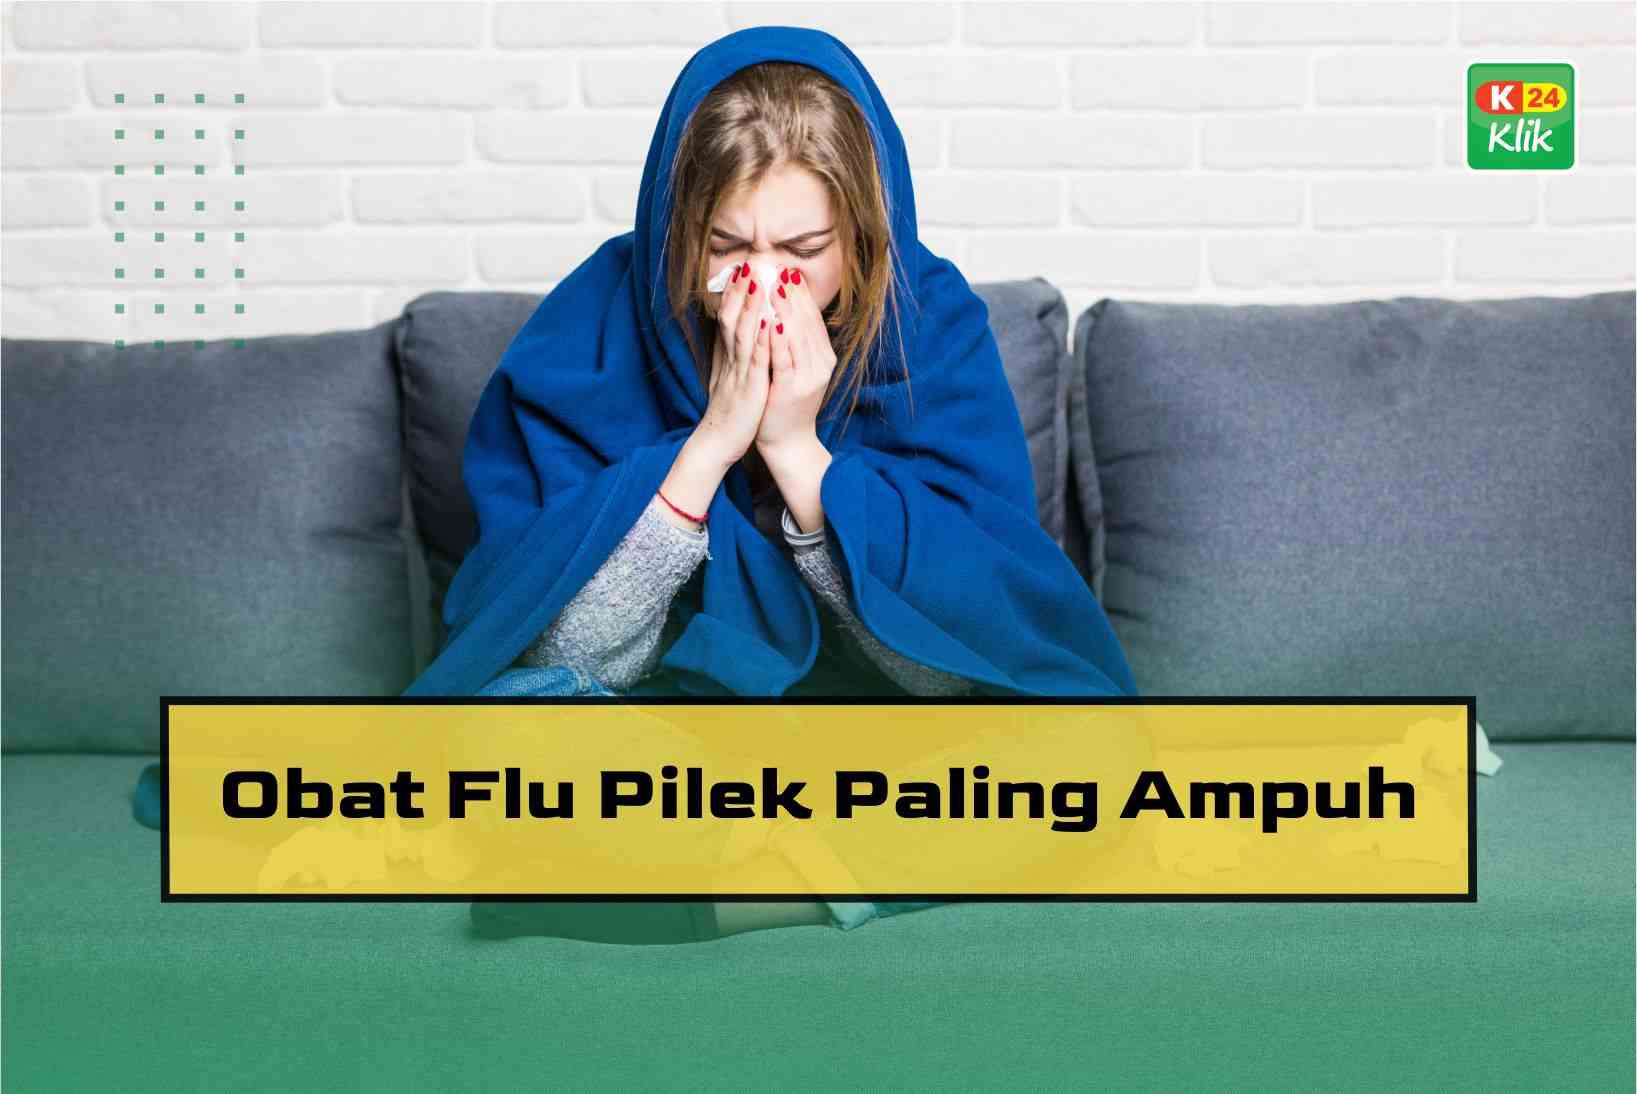 Obat Flu Pilek Paling Ampuh untuk Orang Dewasa